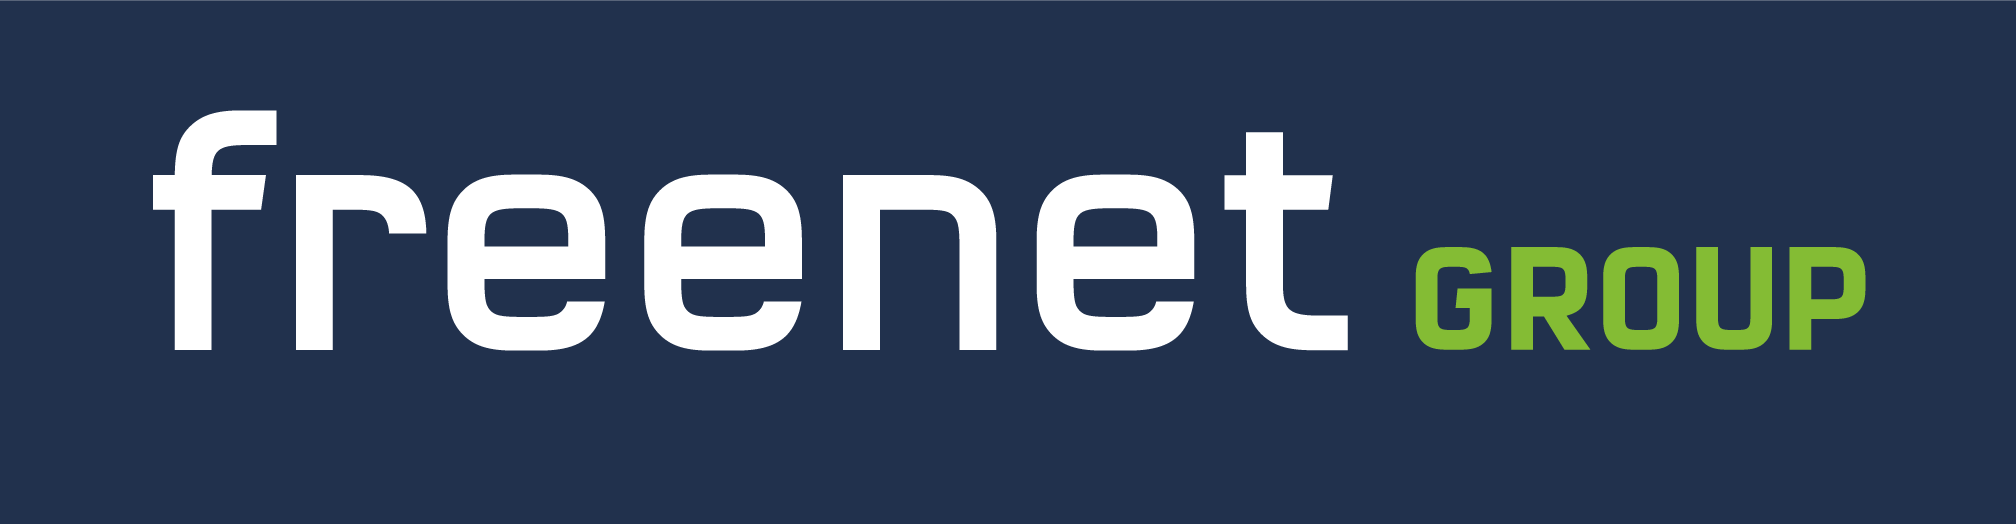 Freenet Group-logo